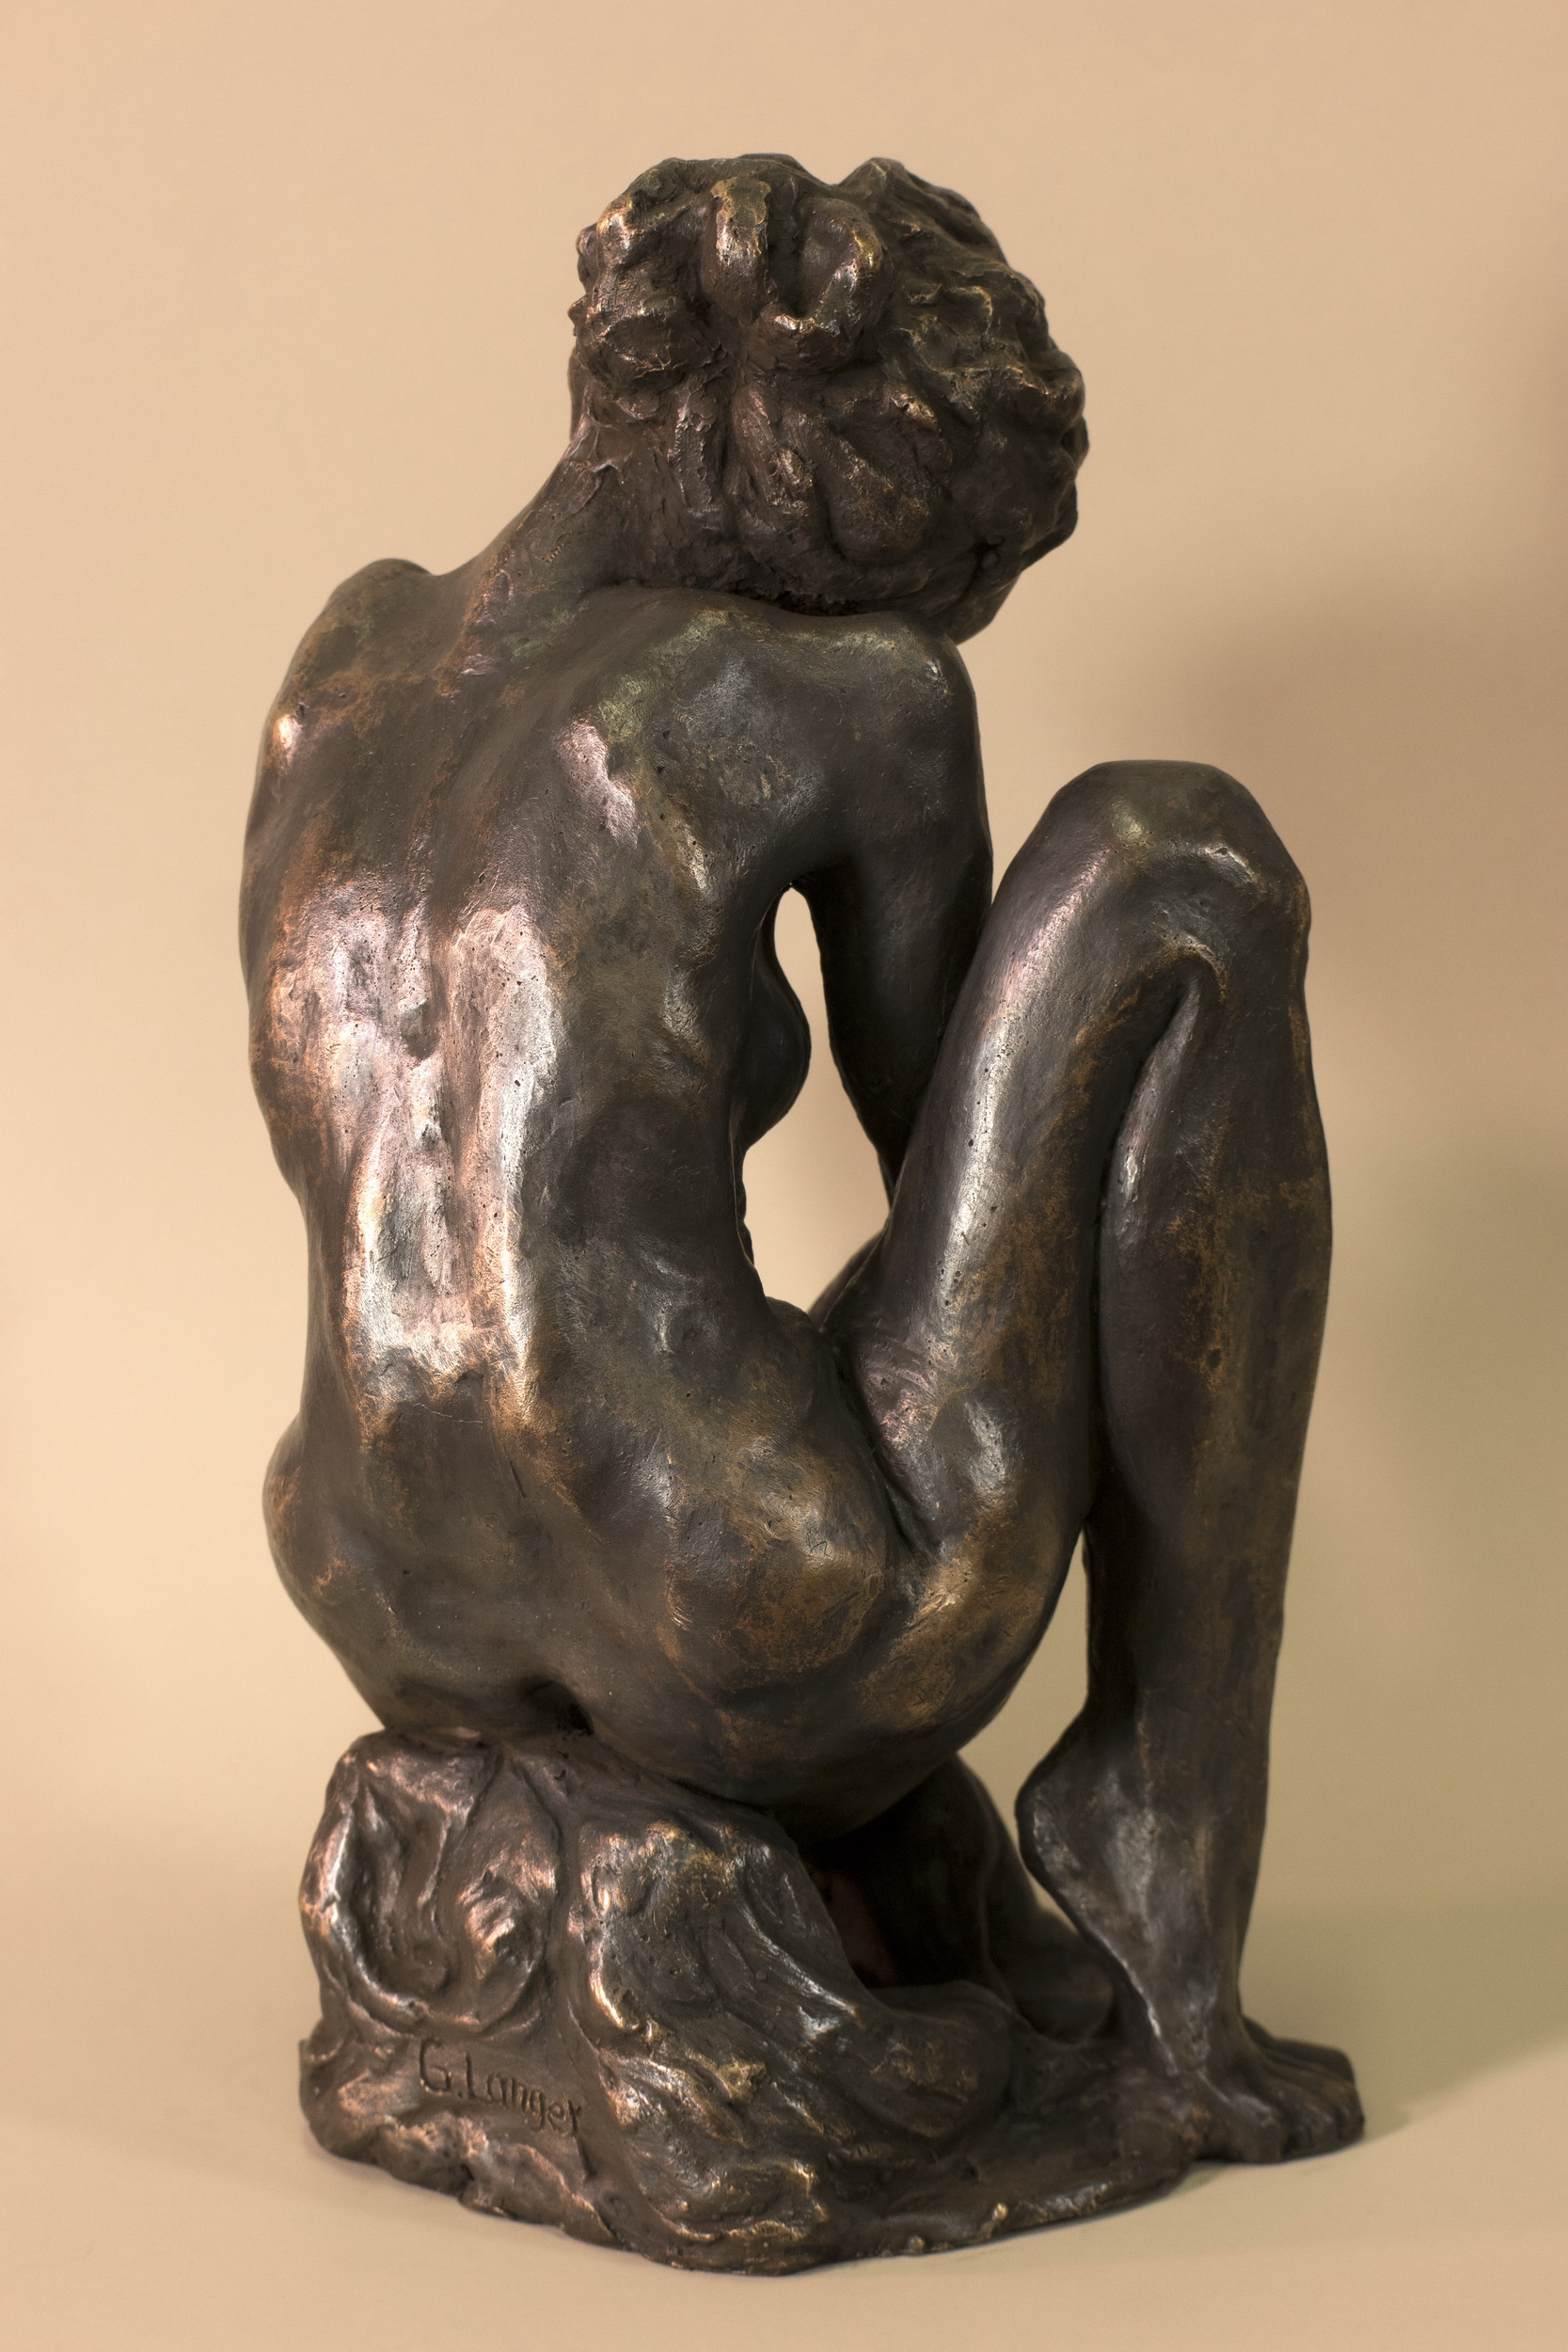 Gunter Langer, Sitzende, 2020, Bronze, 31 x 23 cm